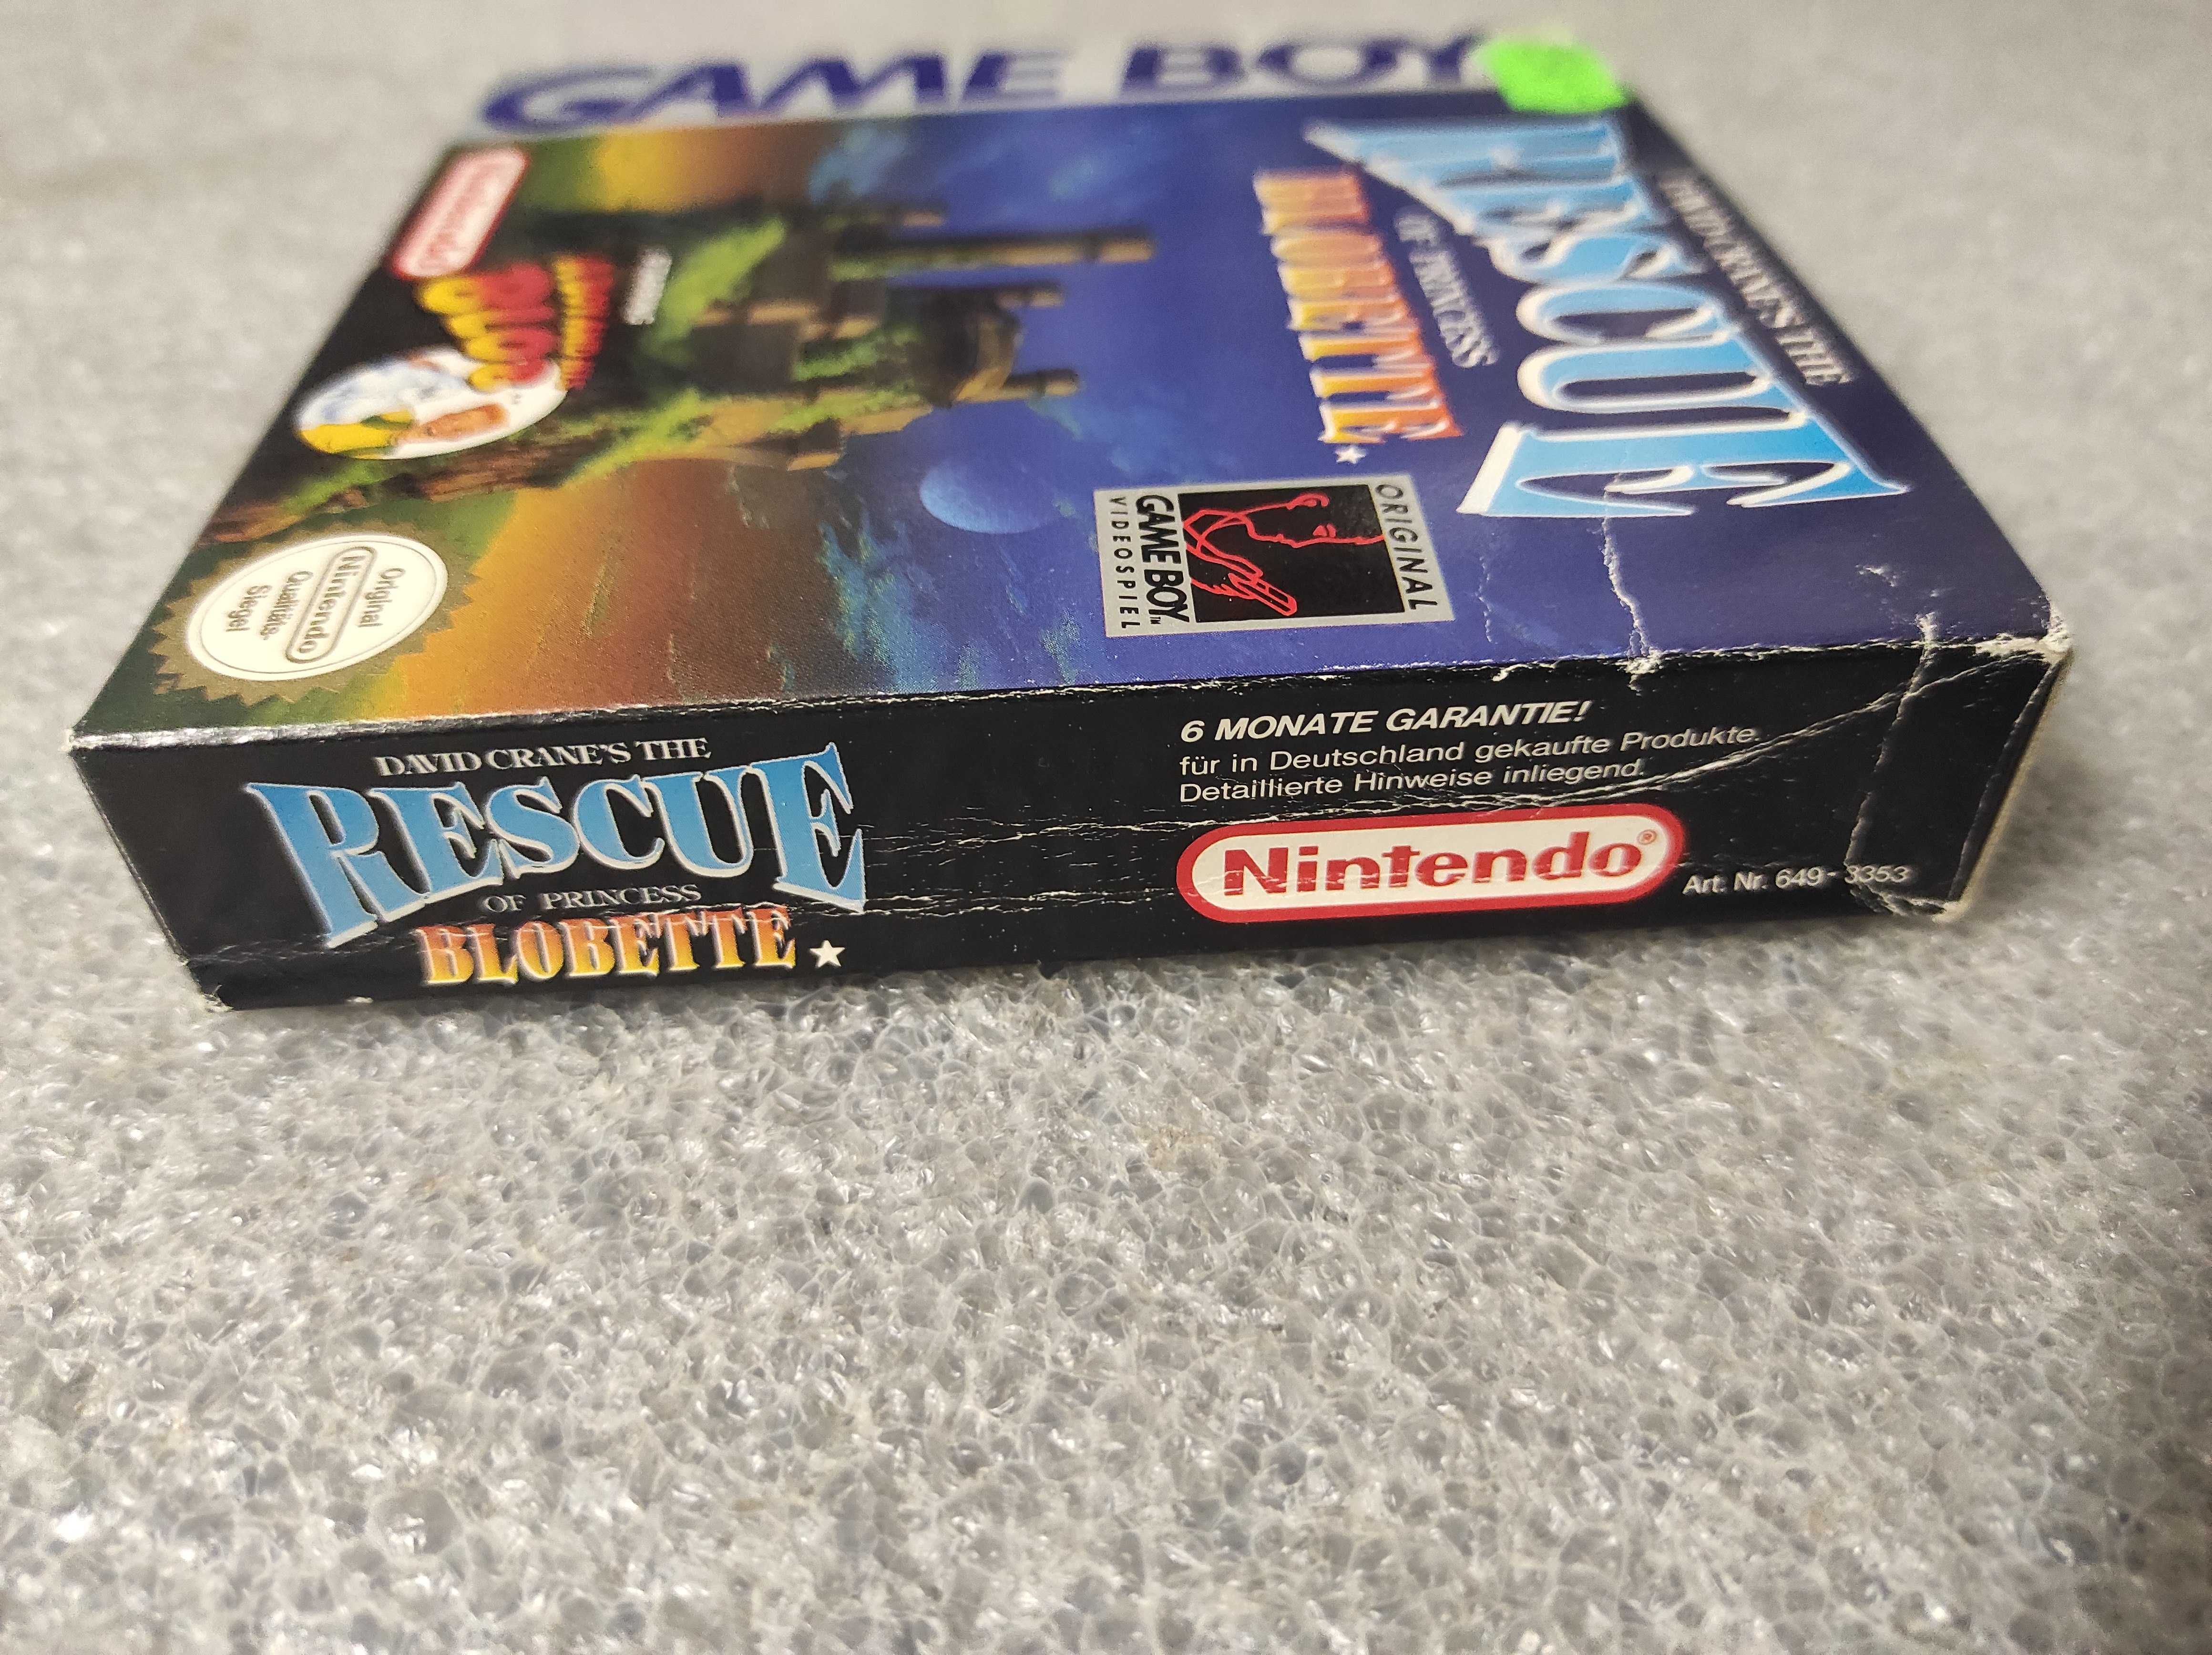 David Cranes Rescue Of Princess Blobette Nintendo GameBoy